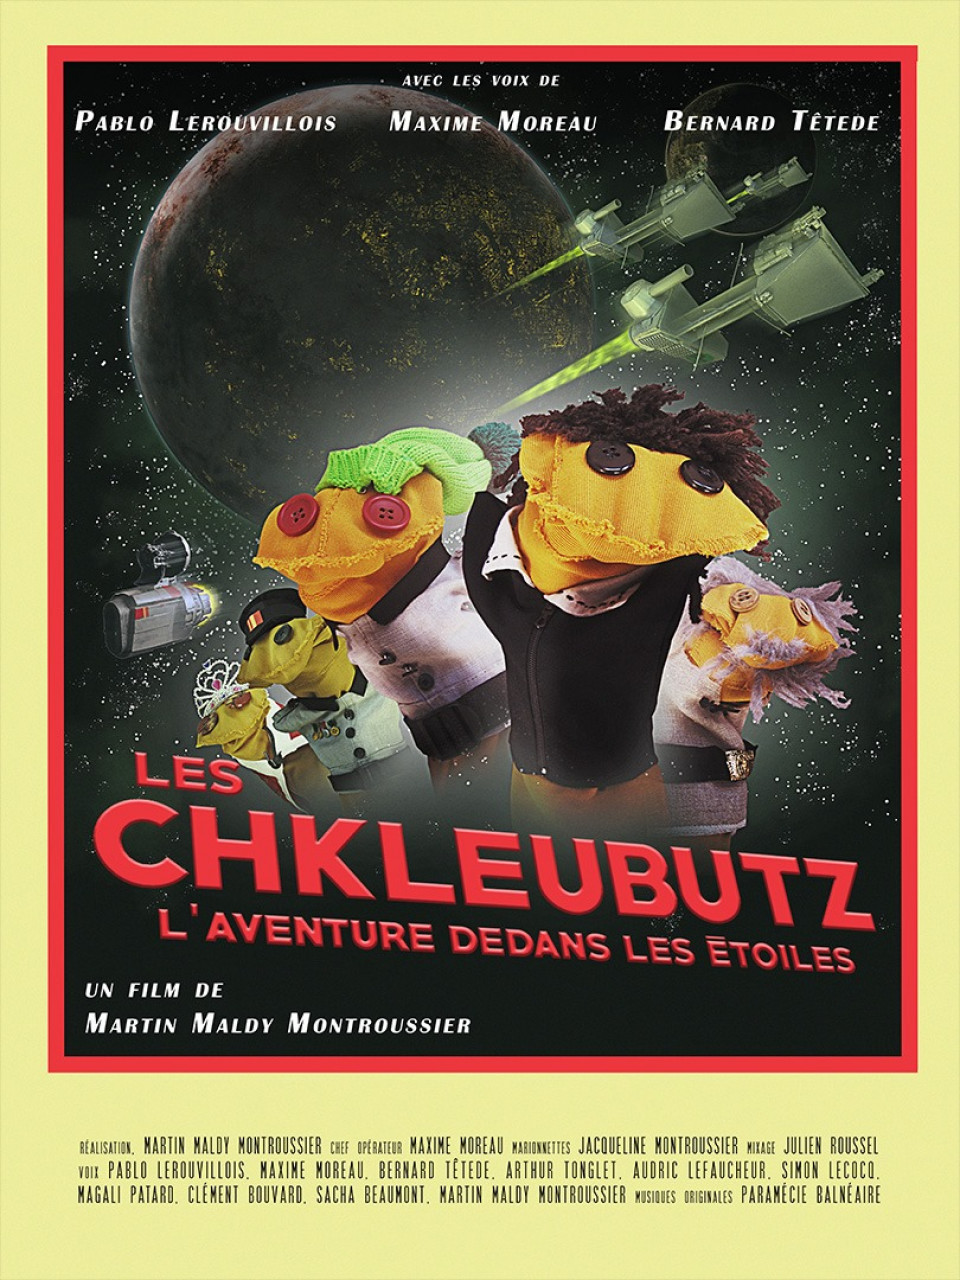 Les Chkleubutz, l'aventure dedans les étoiles